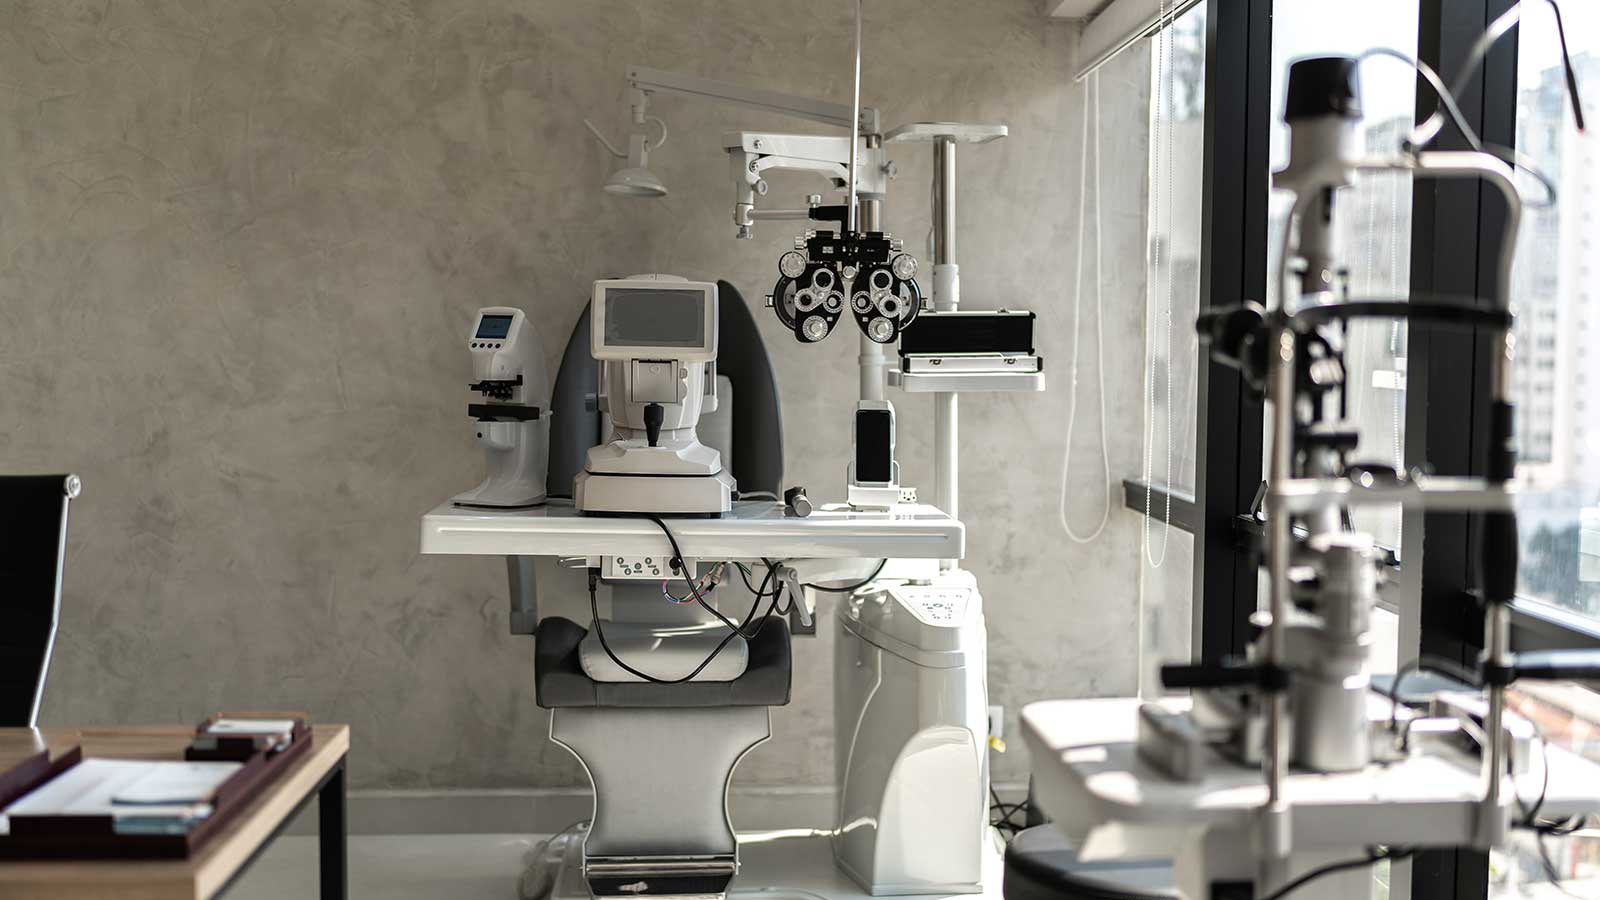 Optometrist examination room